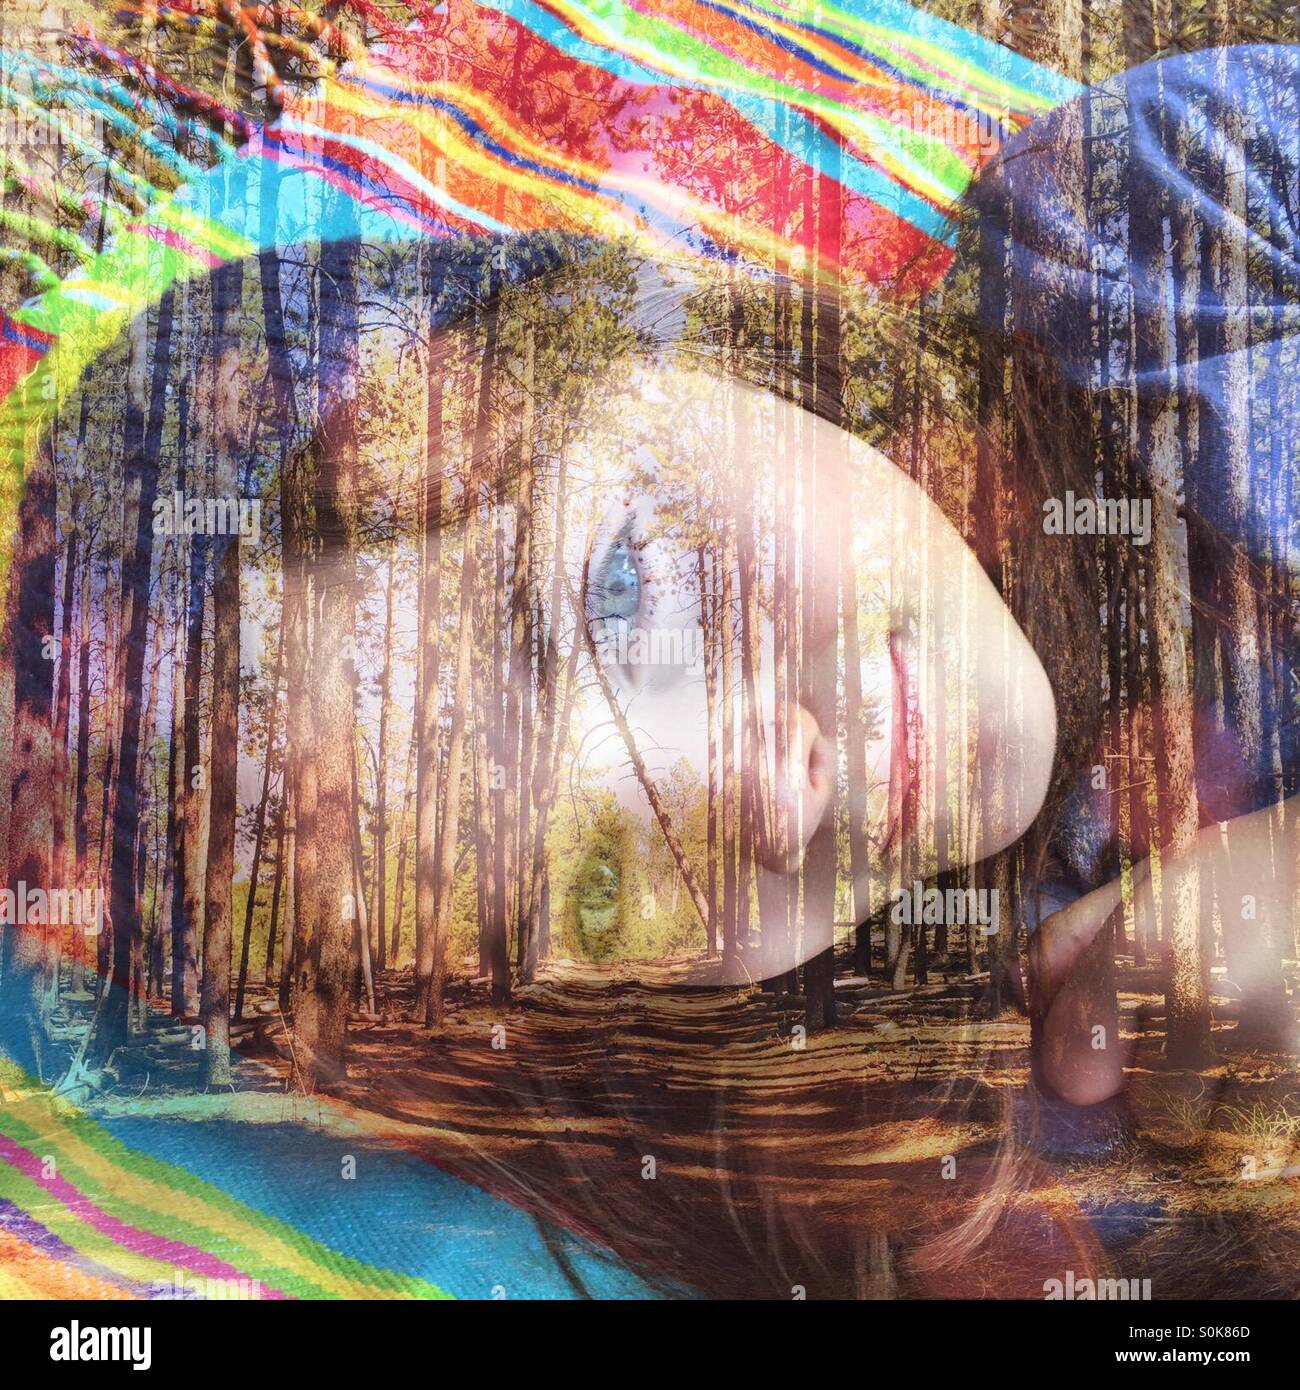 A double - Exposition Foto eines jungen Mädchens, die Verlegung auf einer Picknickdecke und einen Wald schafft eine auffällige und farbenfrohe Bild. Stockfoto